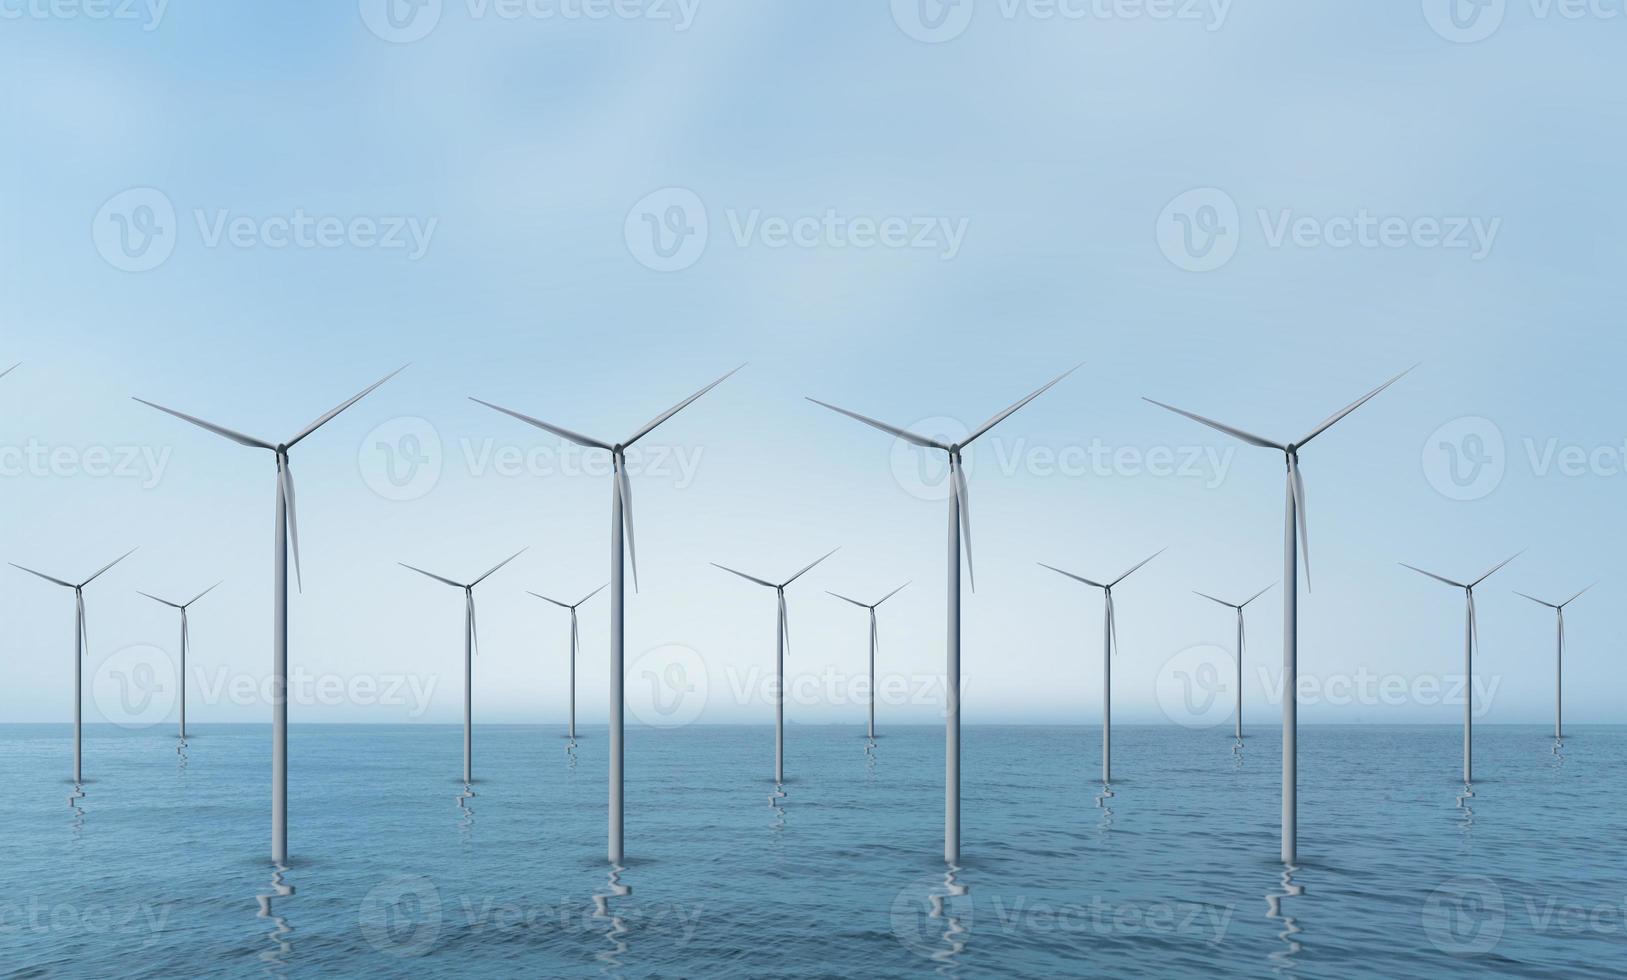 vindkraftverk eller vindkraft översatt till el, gör miljöskydd världen inte het. foto